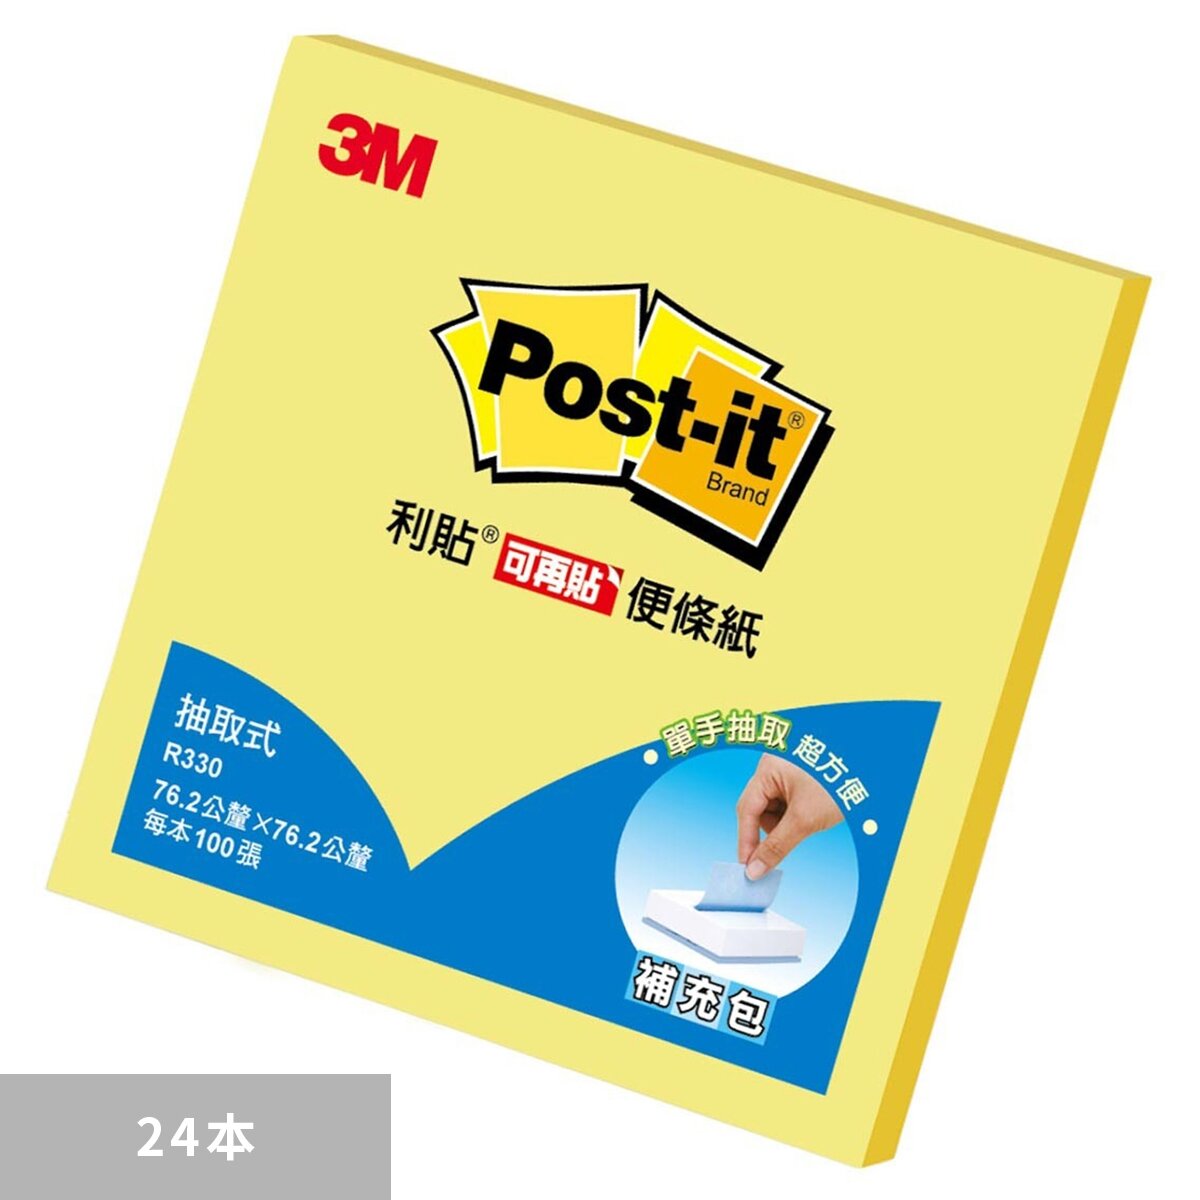 3M Post-it 可再貼抽取式便條紙 76.2公釐 X 76.2公釐 X 24本 R330